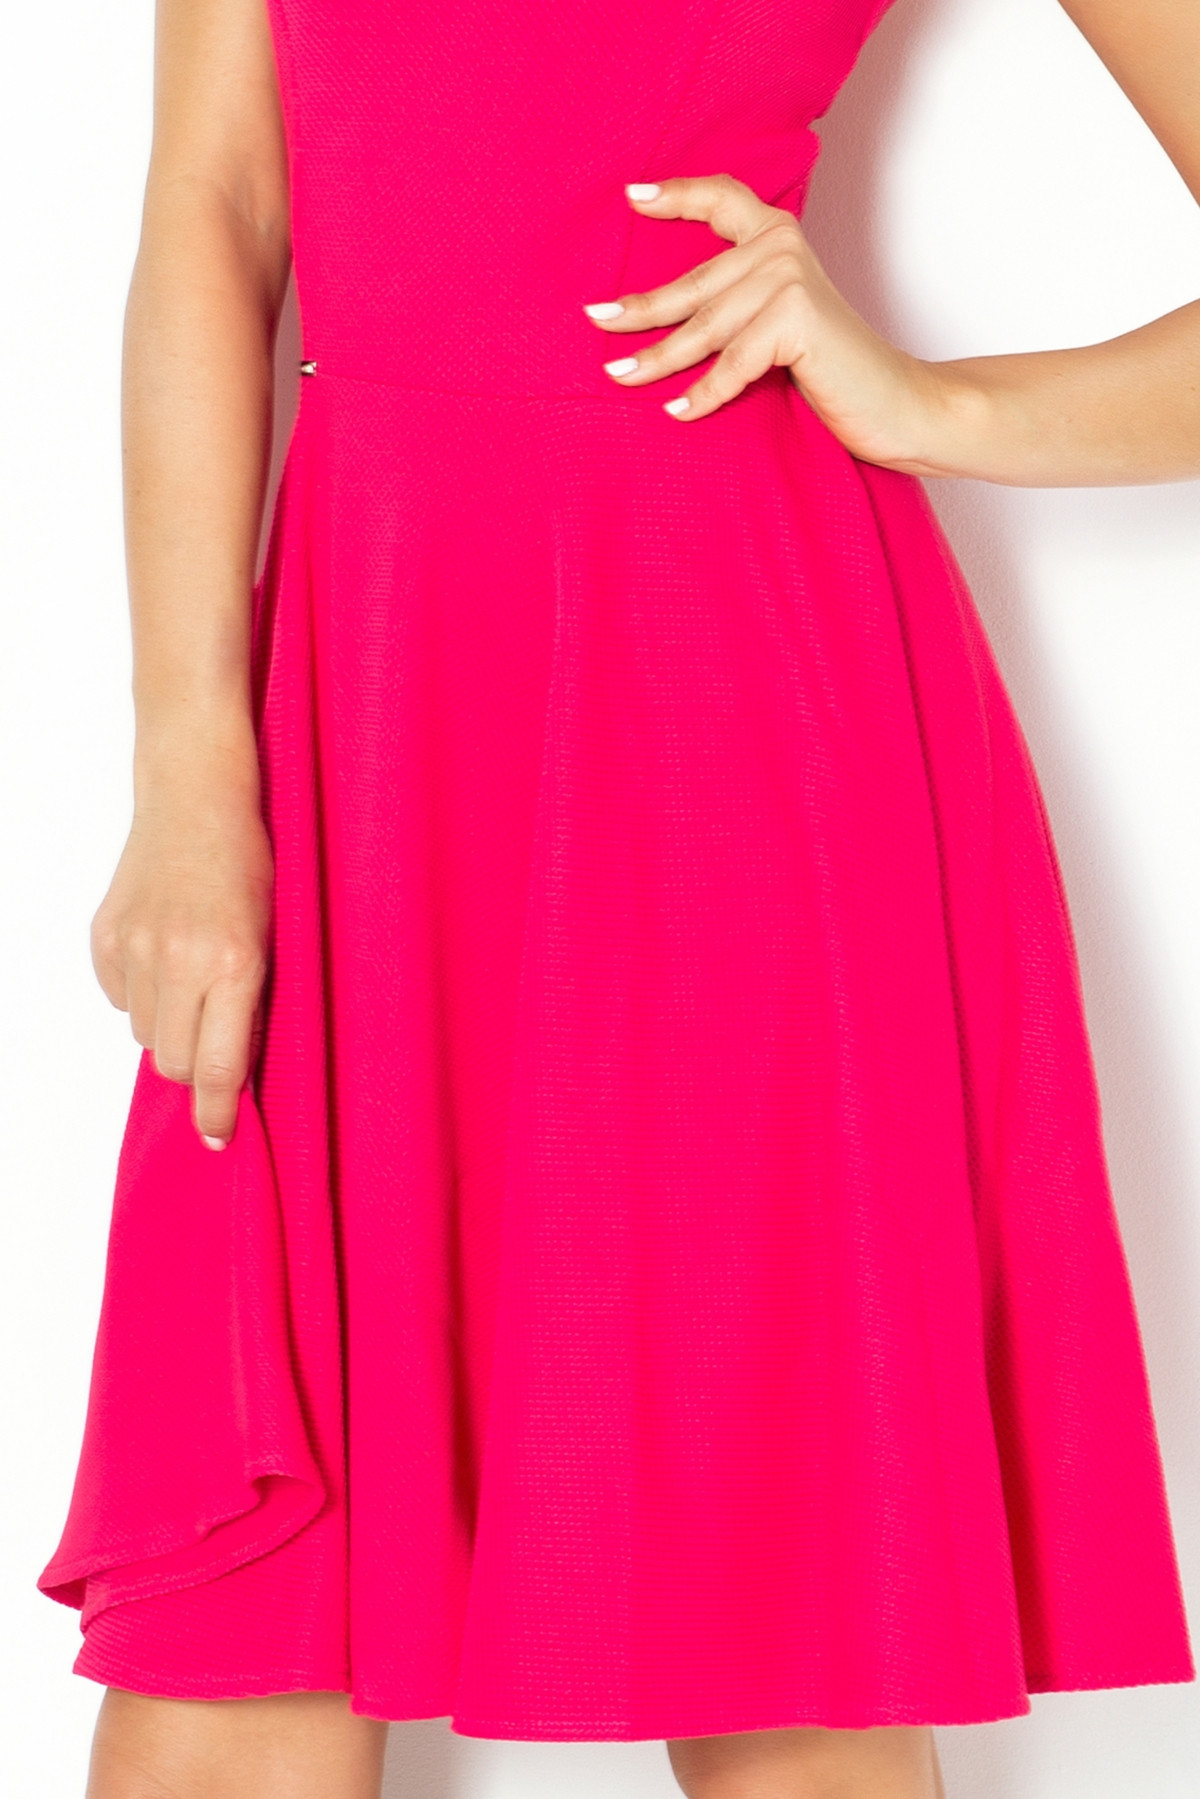 Spoločenské šaty luxusné s kolovou sukňou stredne dlhé malinové - Malinová / S - Numoco S ružová